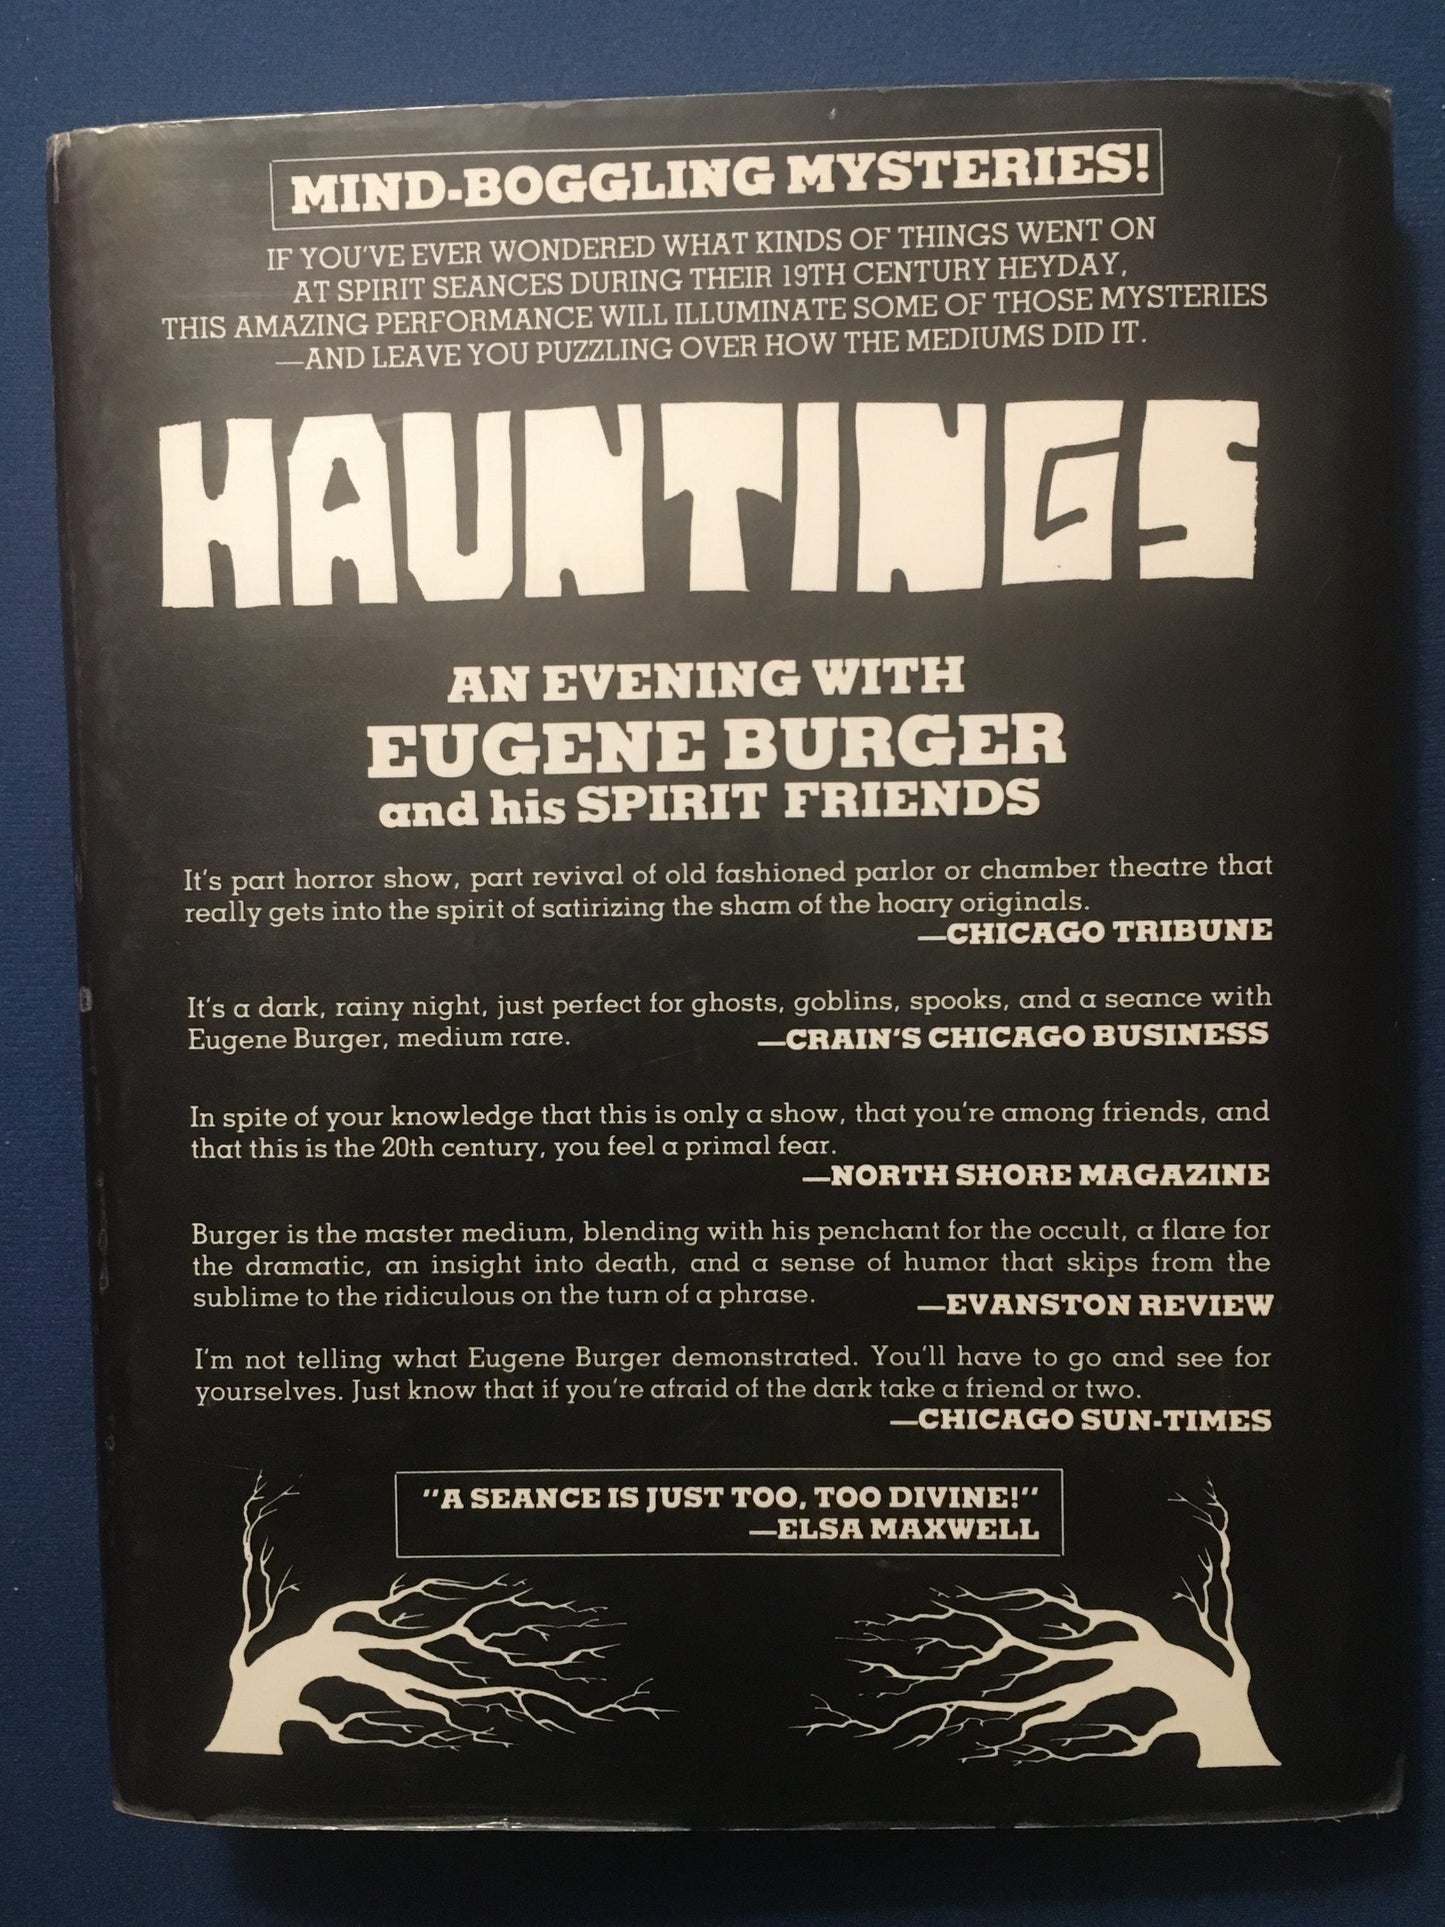 Spirit Theatre d'Eugene Burger, inscrit (comprend le disque !)